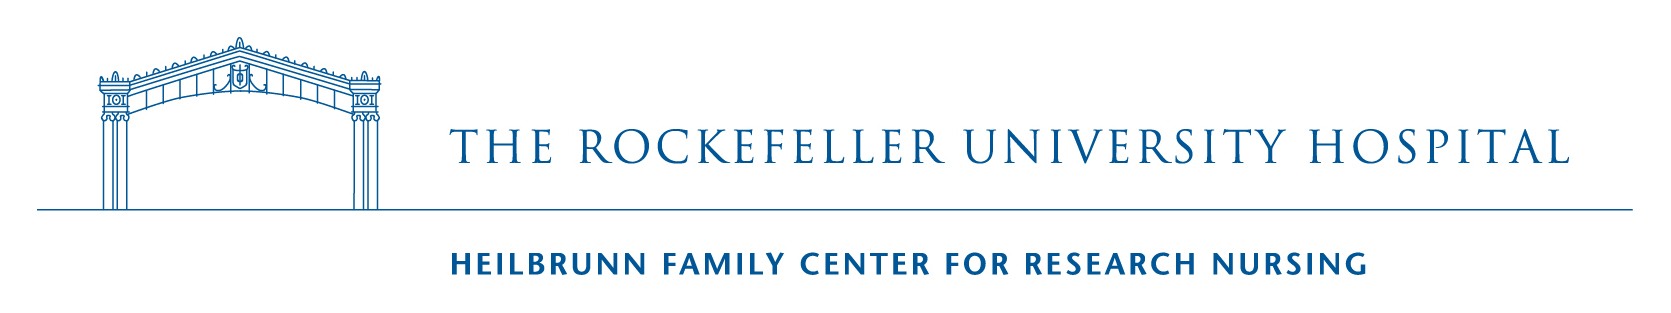 Rockefeller_university_logo